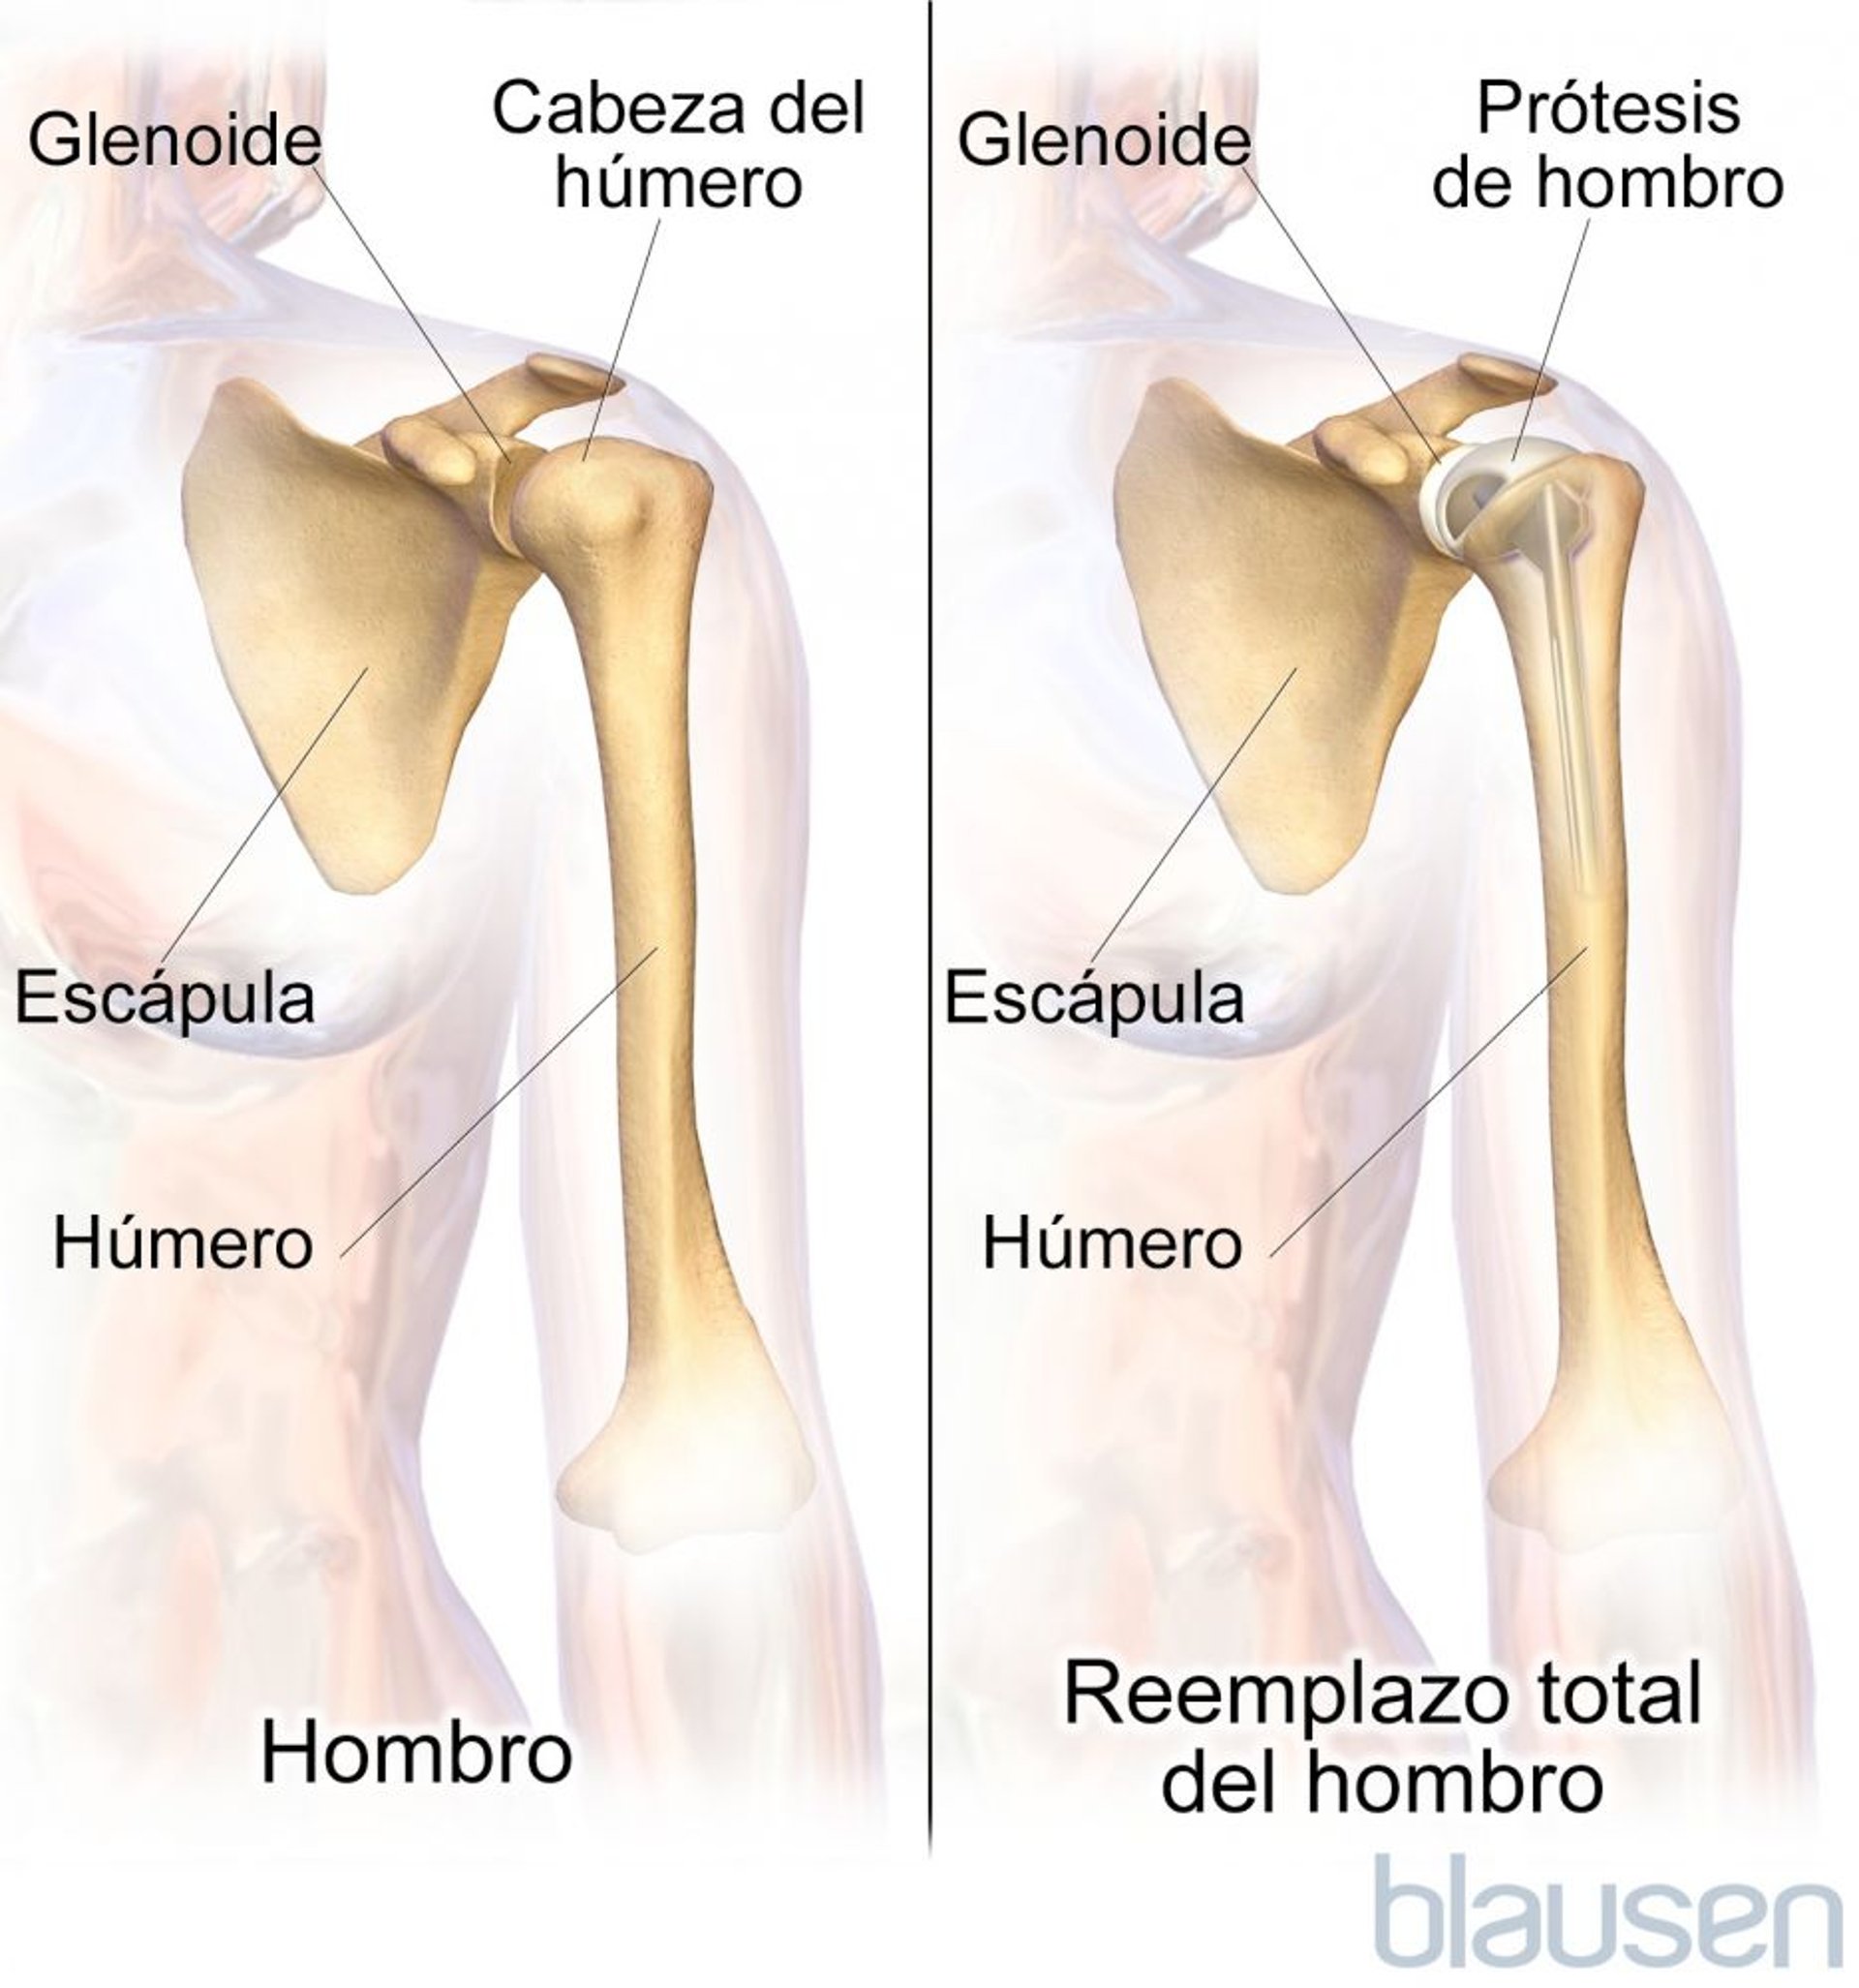 Reemplazo total de hombro (artroplastia)